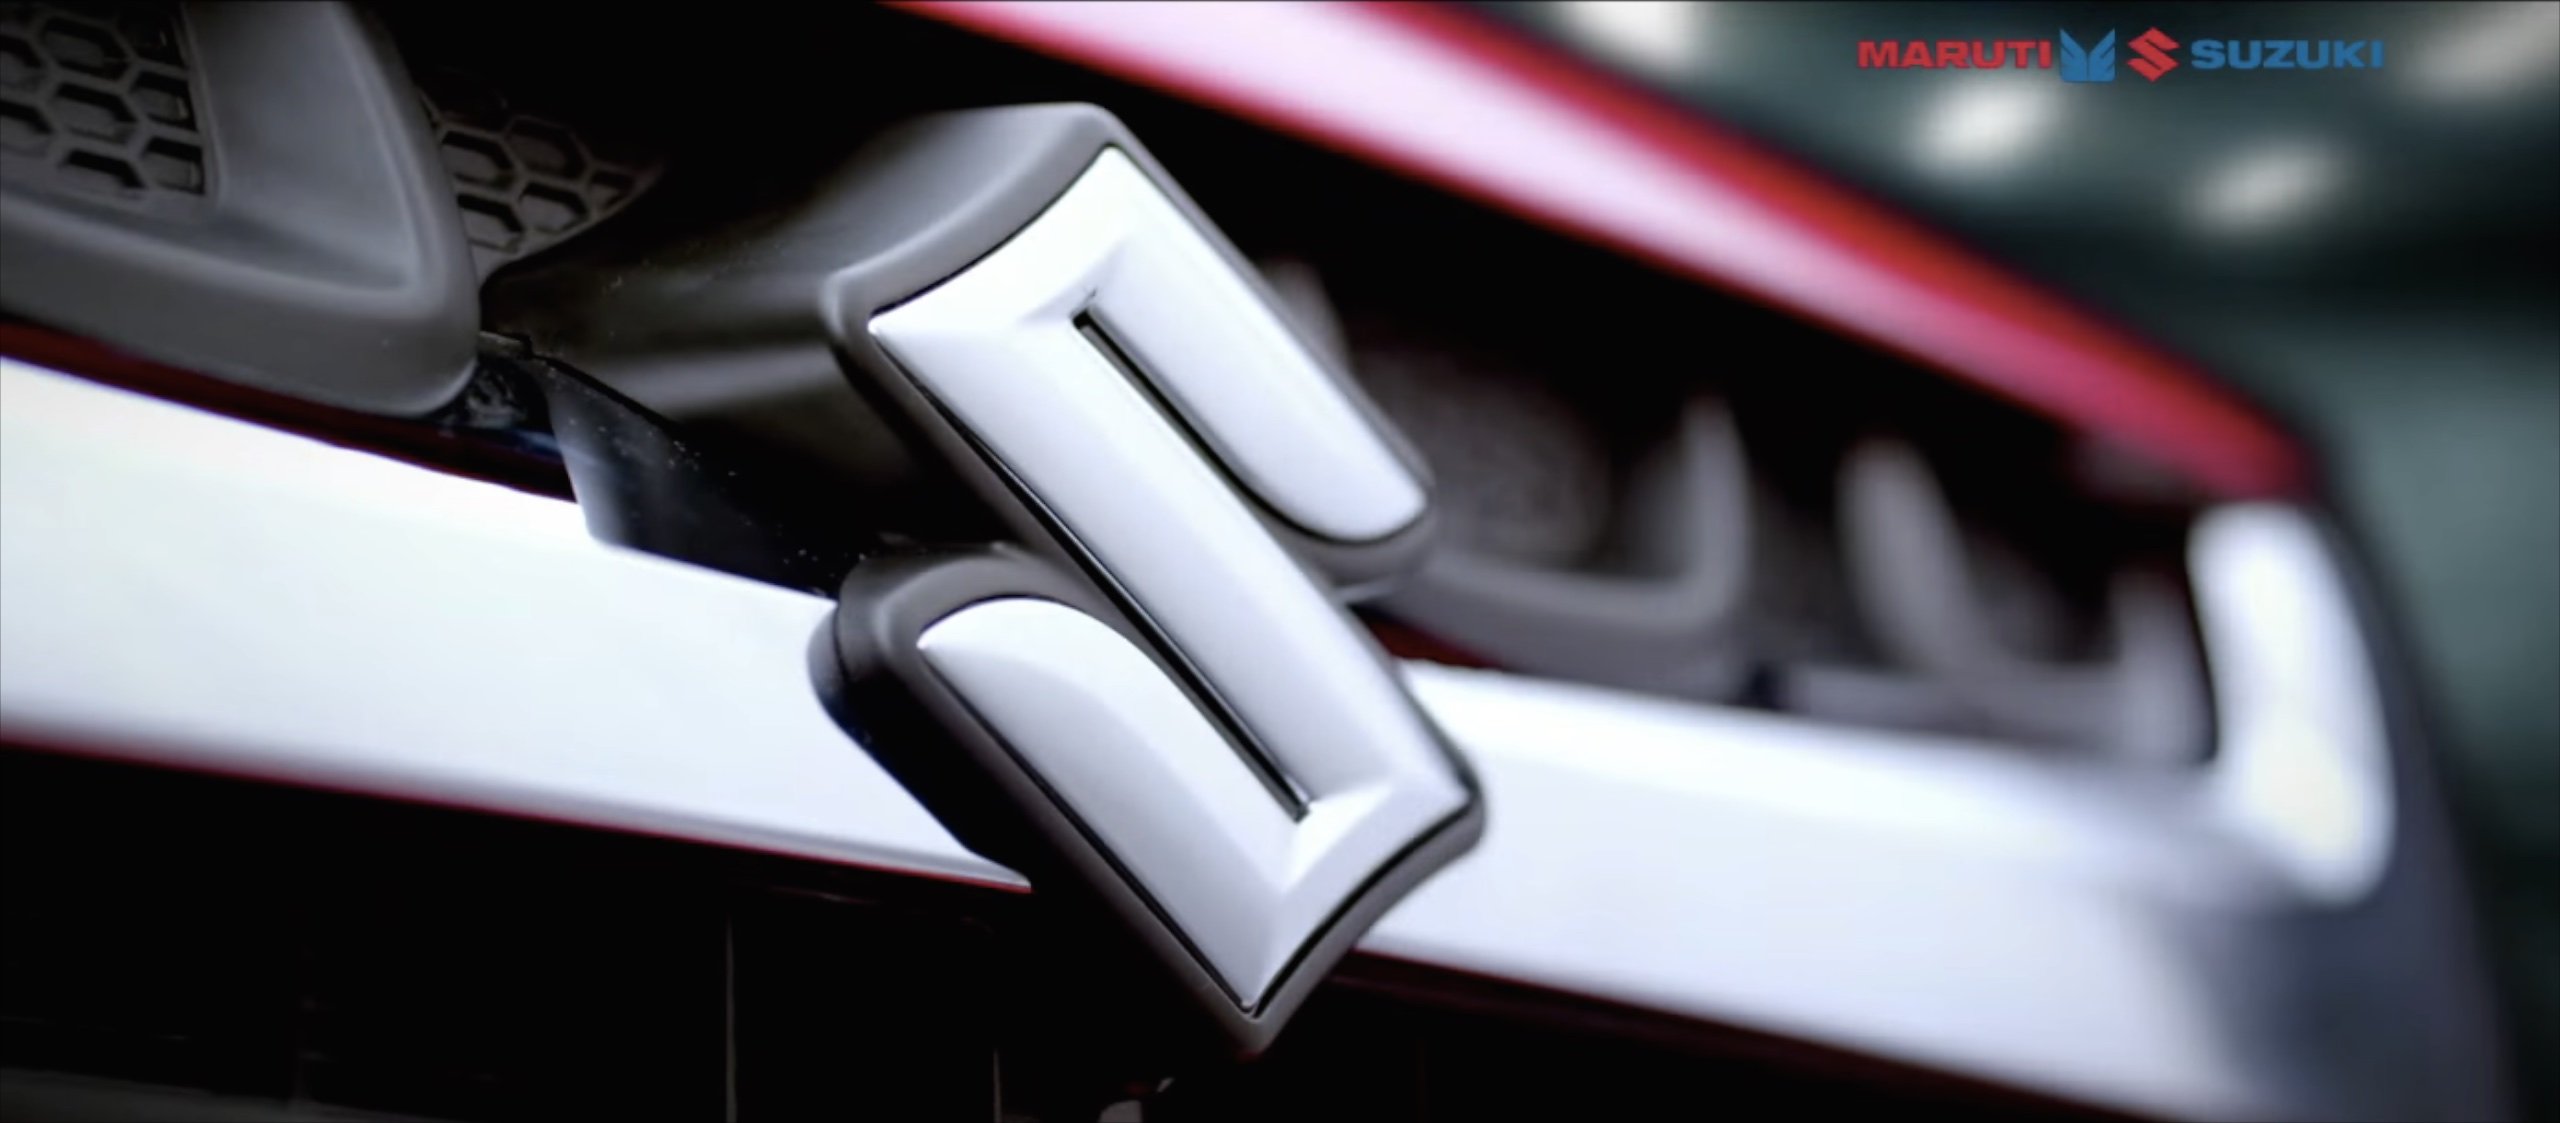 Suzuki 计划投资13.7亿美元于印度建设电动汽车和电池厂